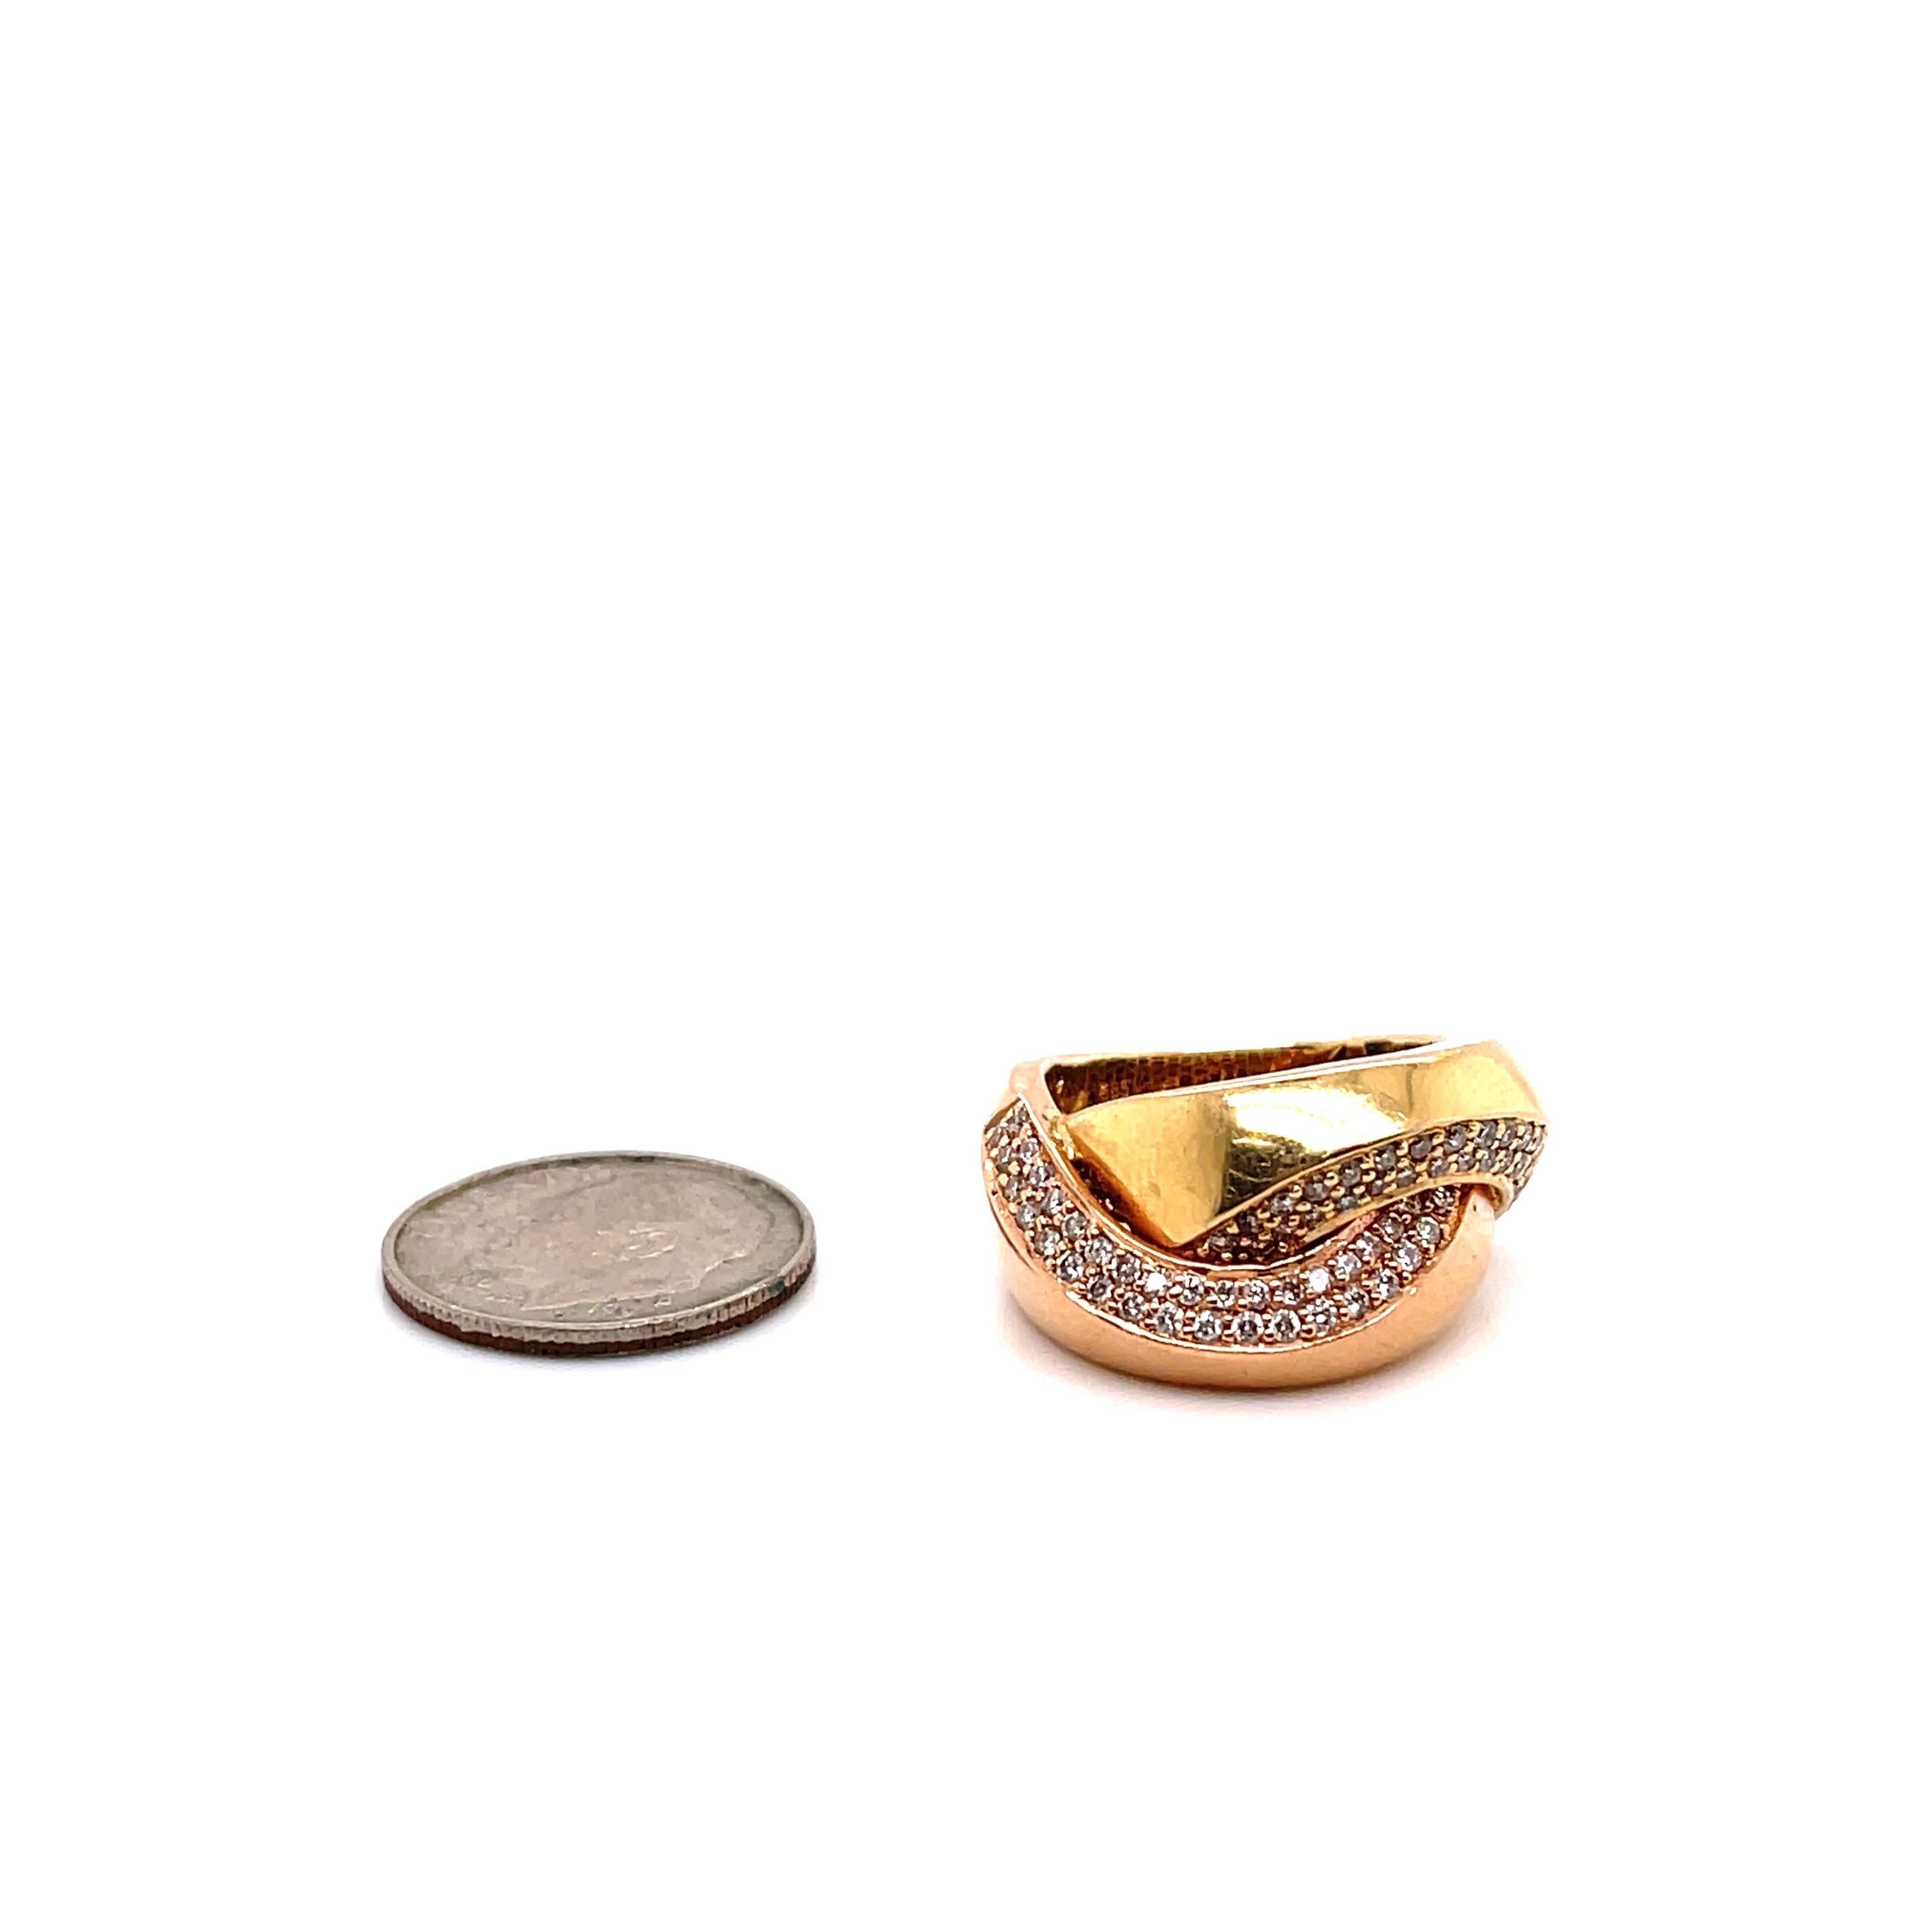 Zweifarbiger Ring aus 14 Karat Gelb- und Roségold mit runden Brillanten von etwa 0,75 Karat.